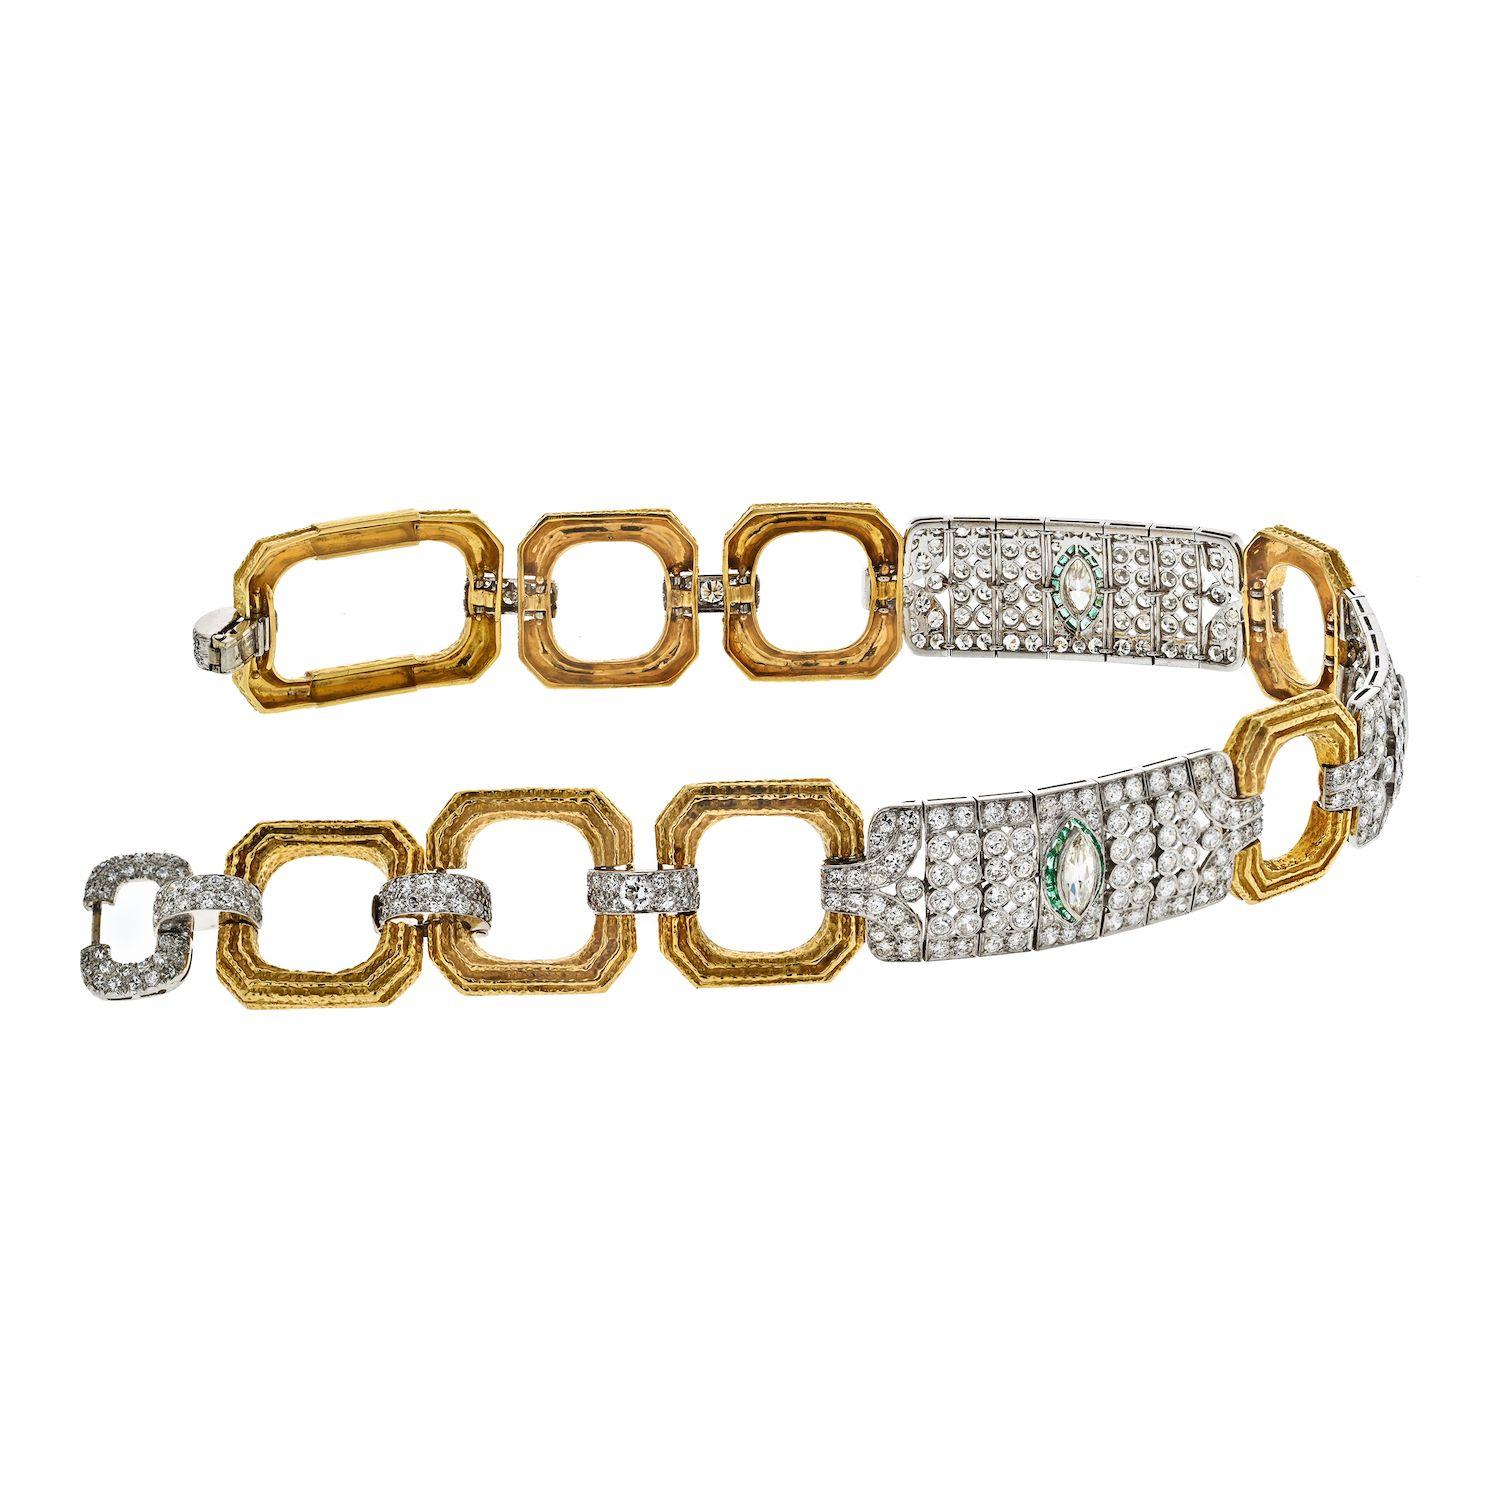 Die David Webb Halskette ist ein atemberaubendes Schmuckstück, das für die exquisite Handwerkskunst und das luxuriöse Design steht, für das die Marke bekannt ist. Das aus einer Kombination von Platin und Gold gefertigte Collier ist auf der gesamten